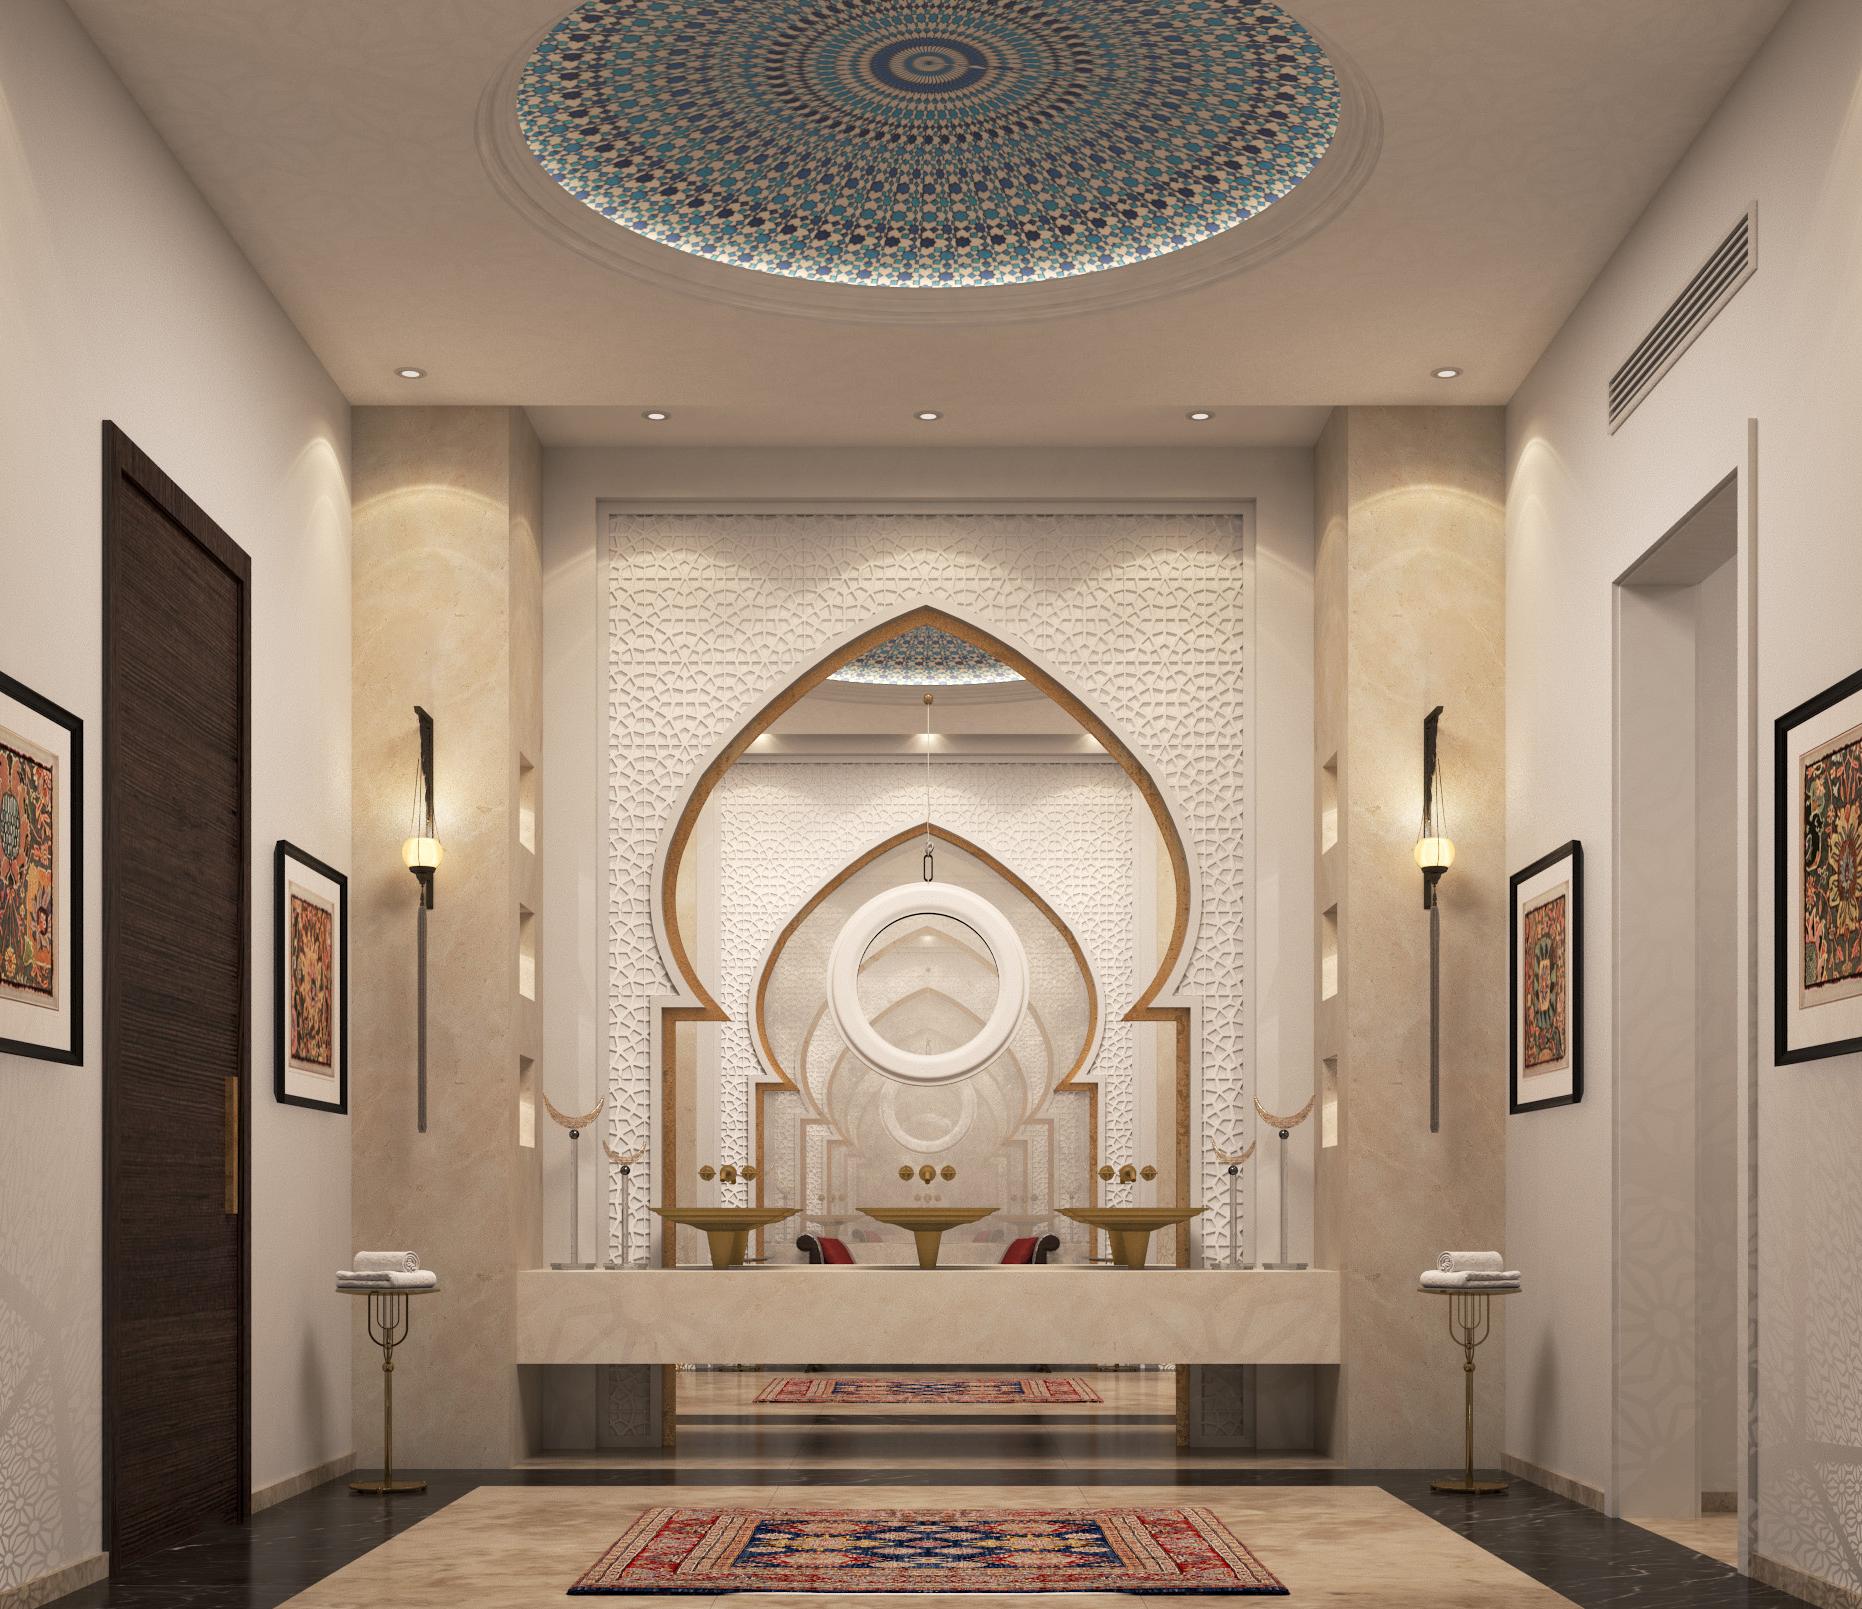 Арабский дизайн интерьера > 50 фото-идей с арабским стилем в интерьерах комнат